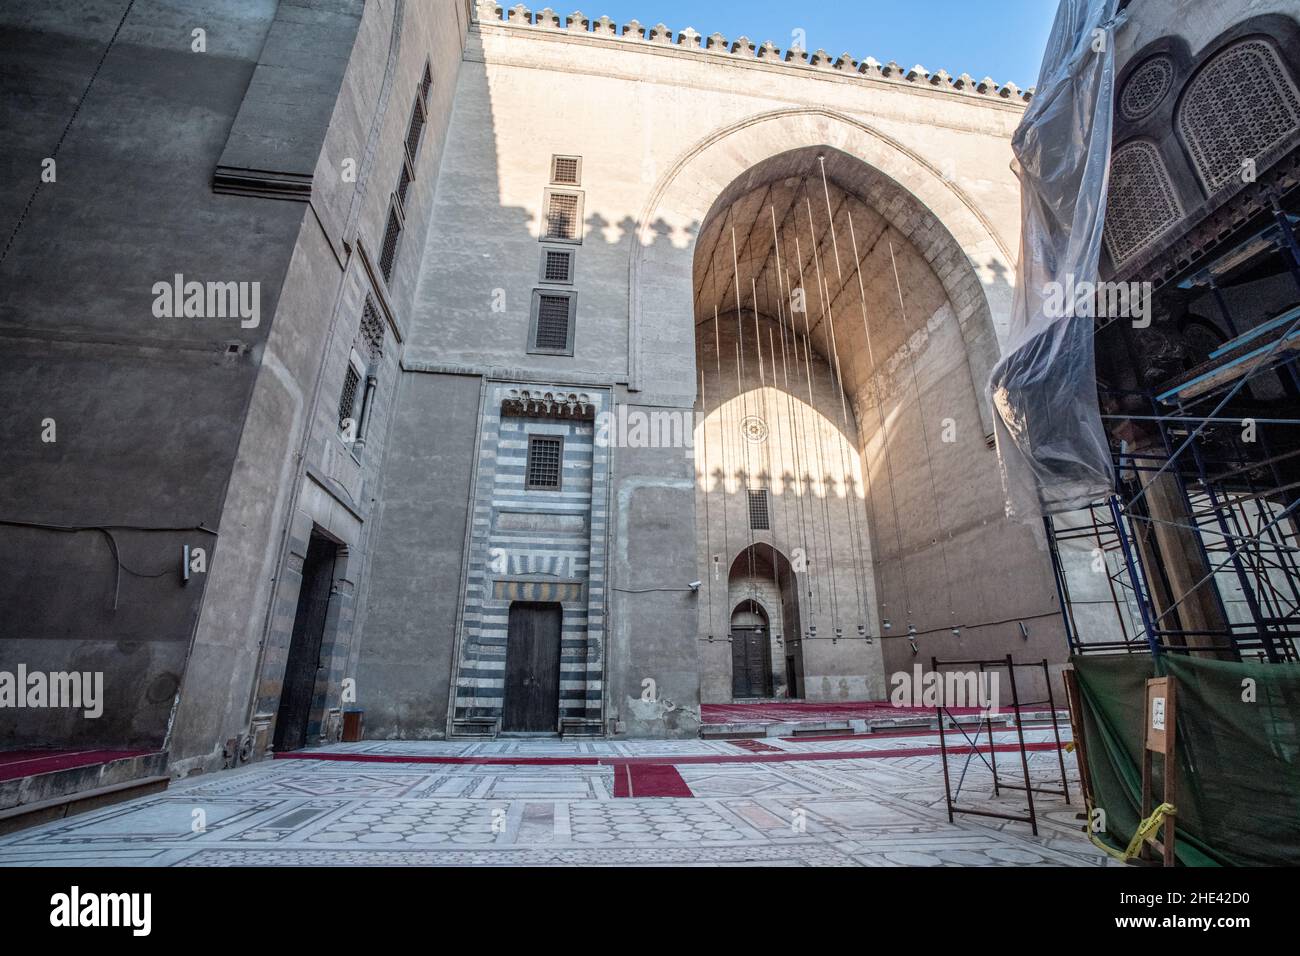 Uno degli abitanti della moschea di Sultan Hassan nel quartiere storico del Cairo, in Egitto. Considerato come uno dei più grandi edifici islamici. Foto Stock